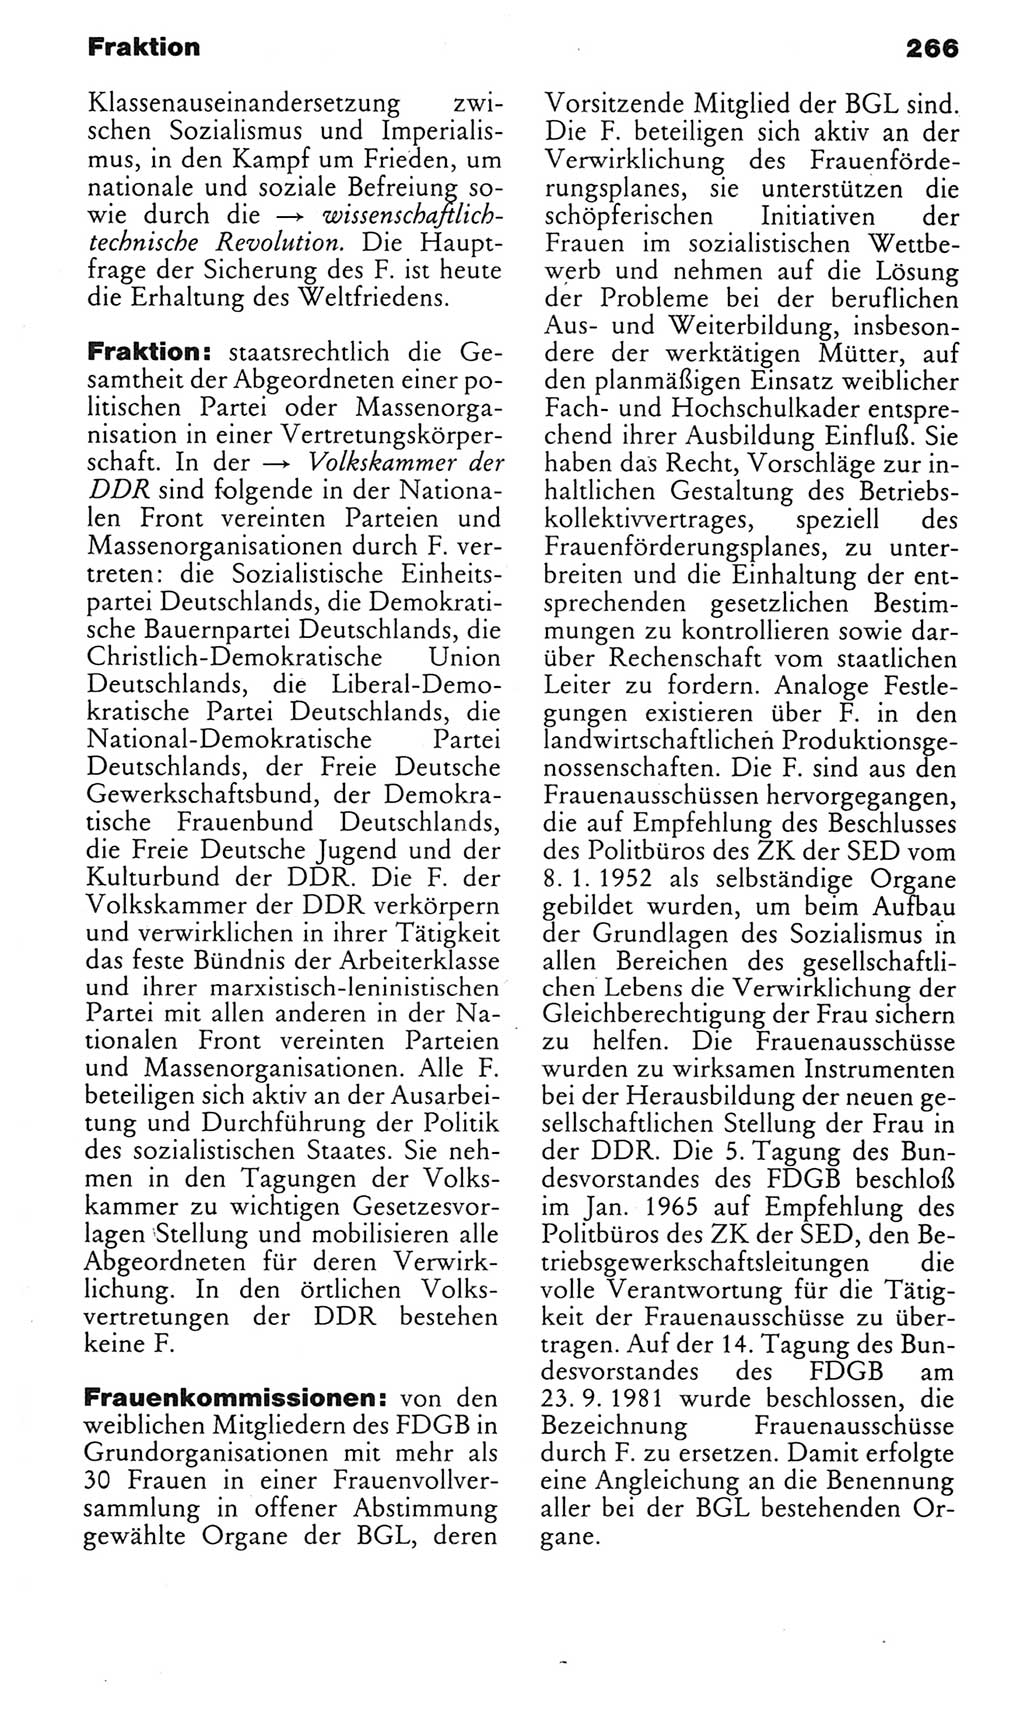 Kleines politisches Wörterbuch [Deutsche Demokratische Republik (DDR)] 1985, Seite 266 (Kl. pol. Wb. DDR 1985, S. 266)